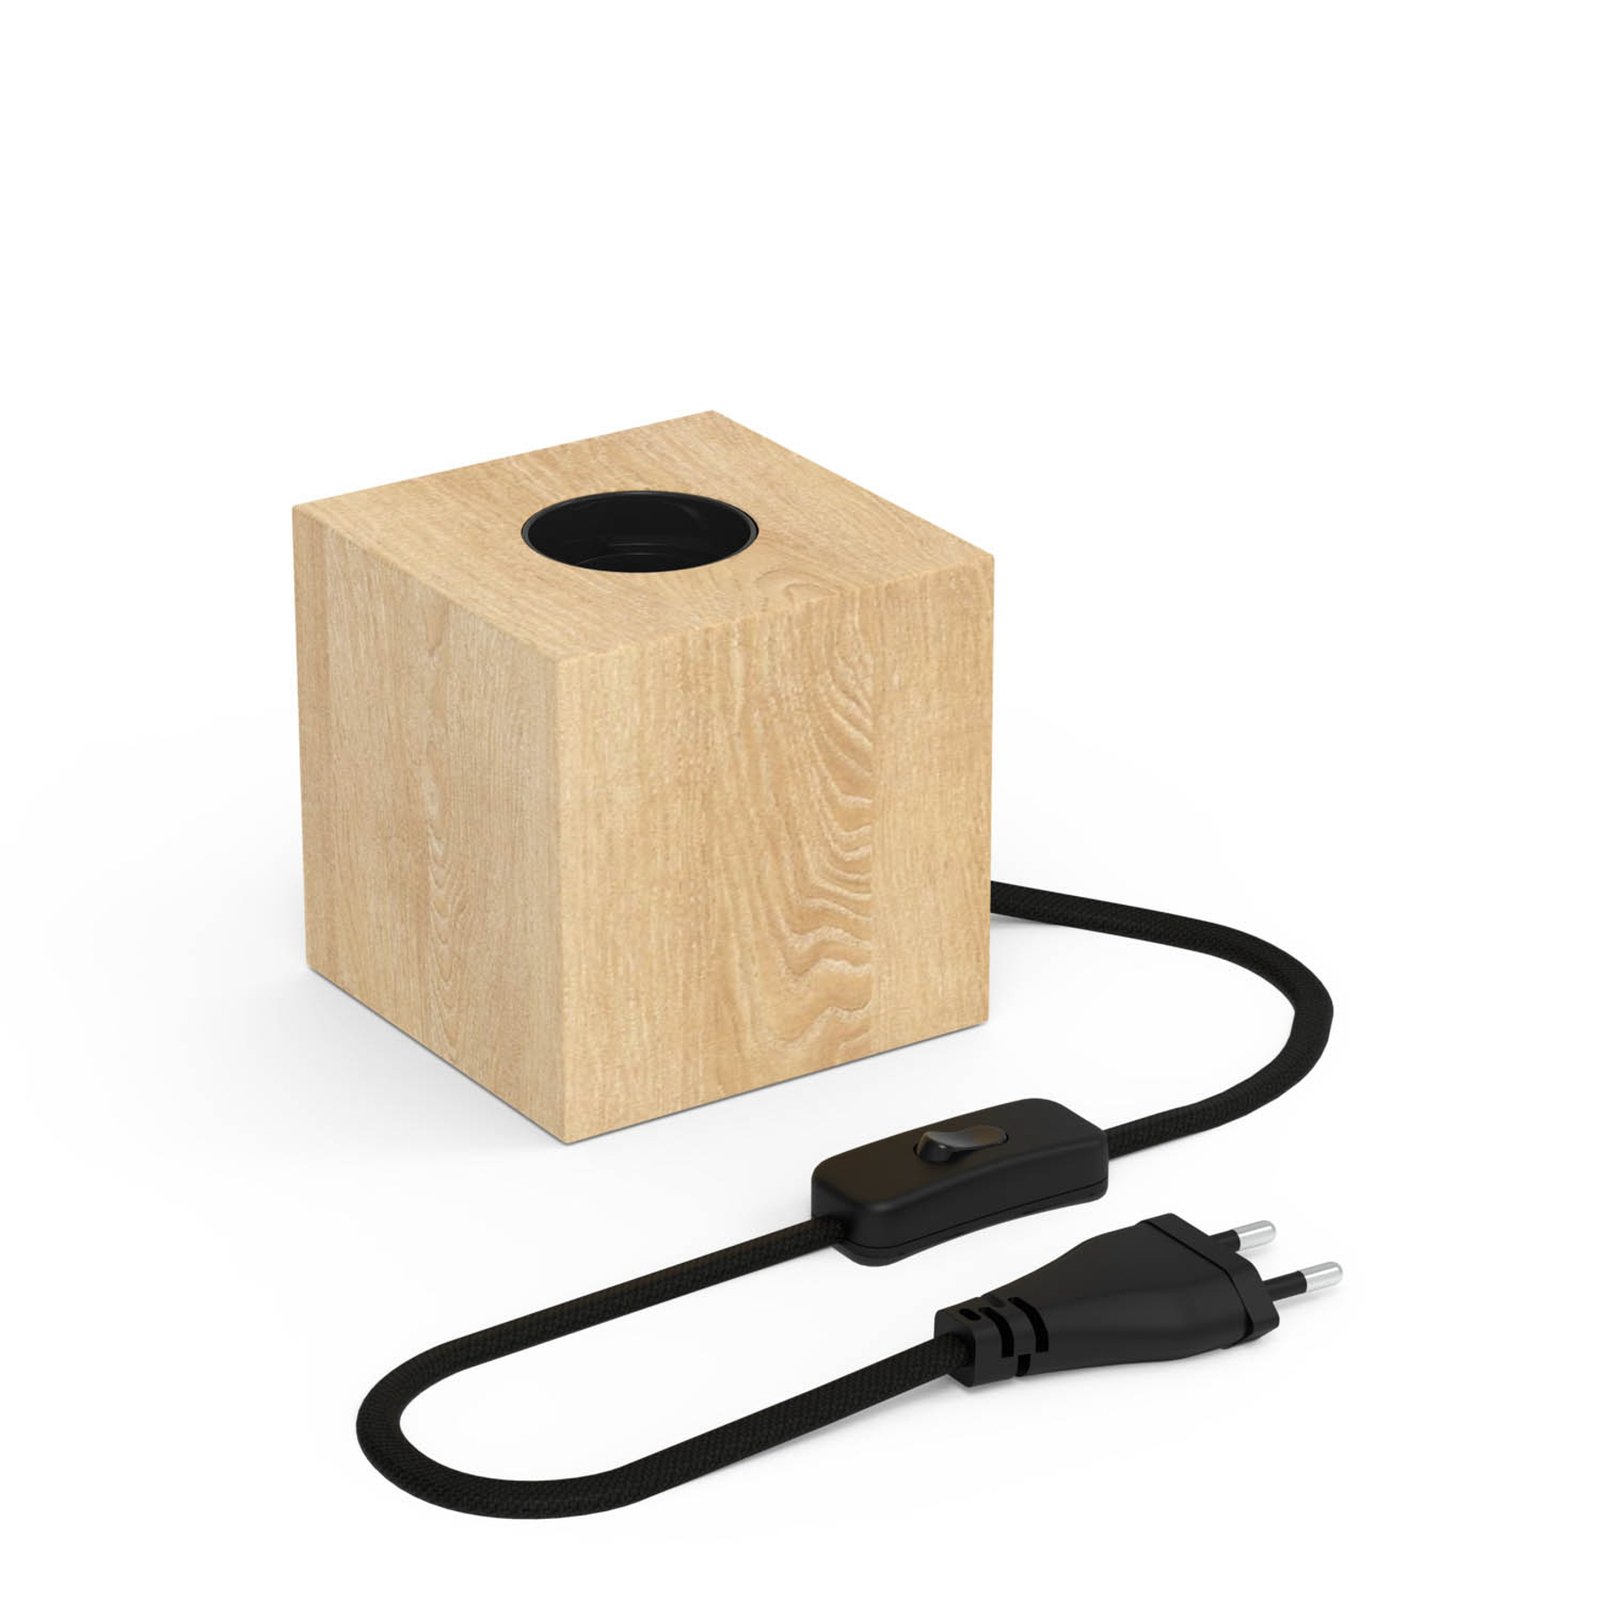 Calex stolová lampa v tvare kocky s drevenou dyhou